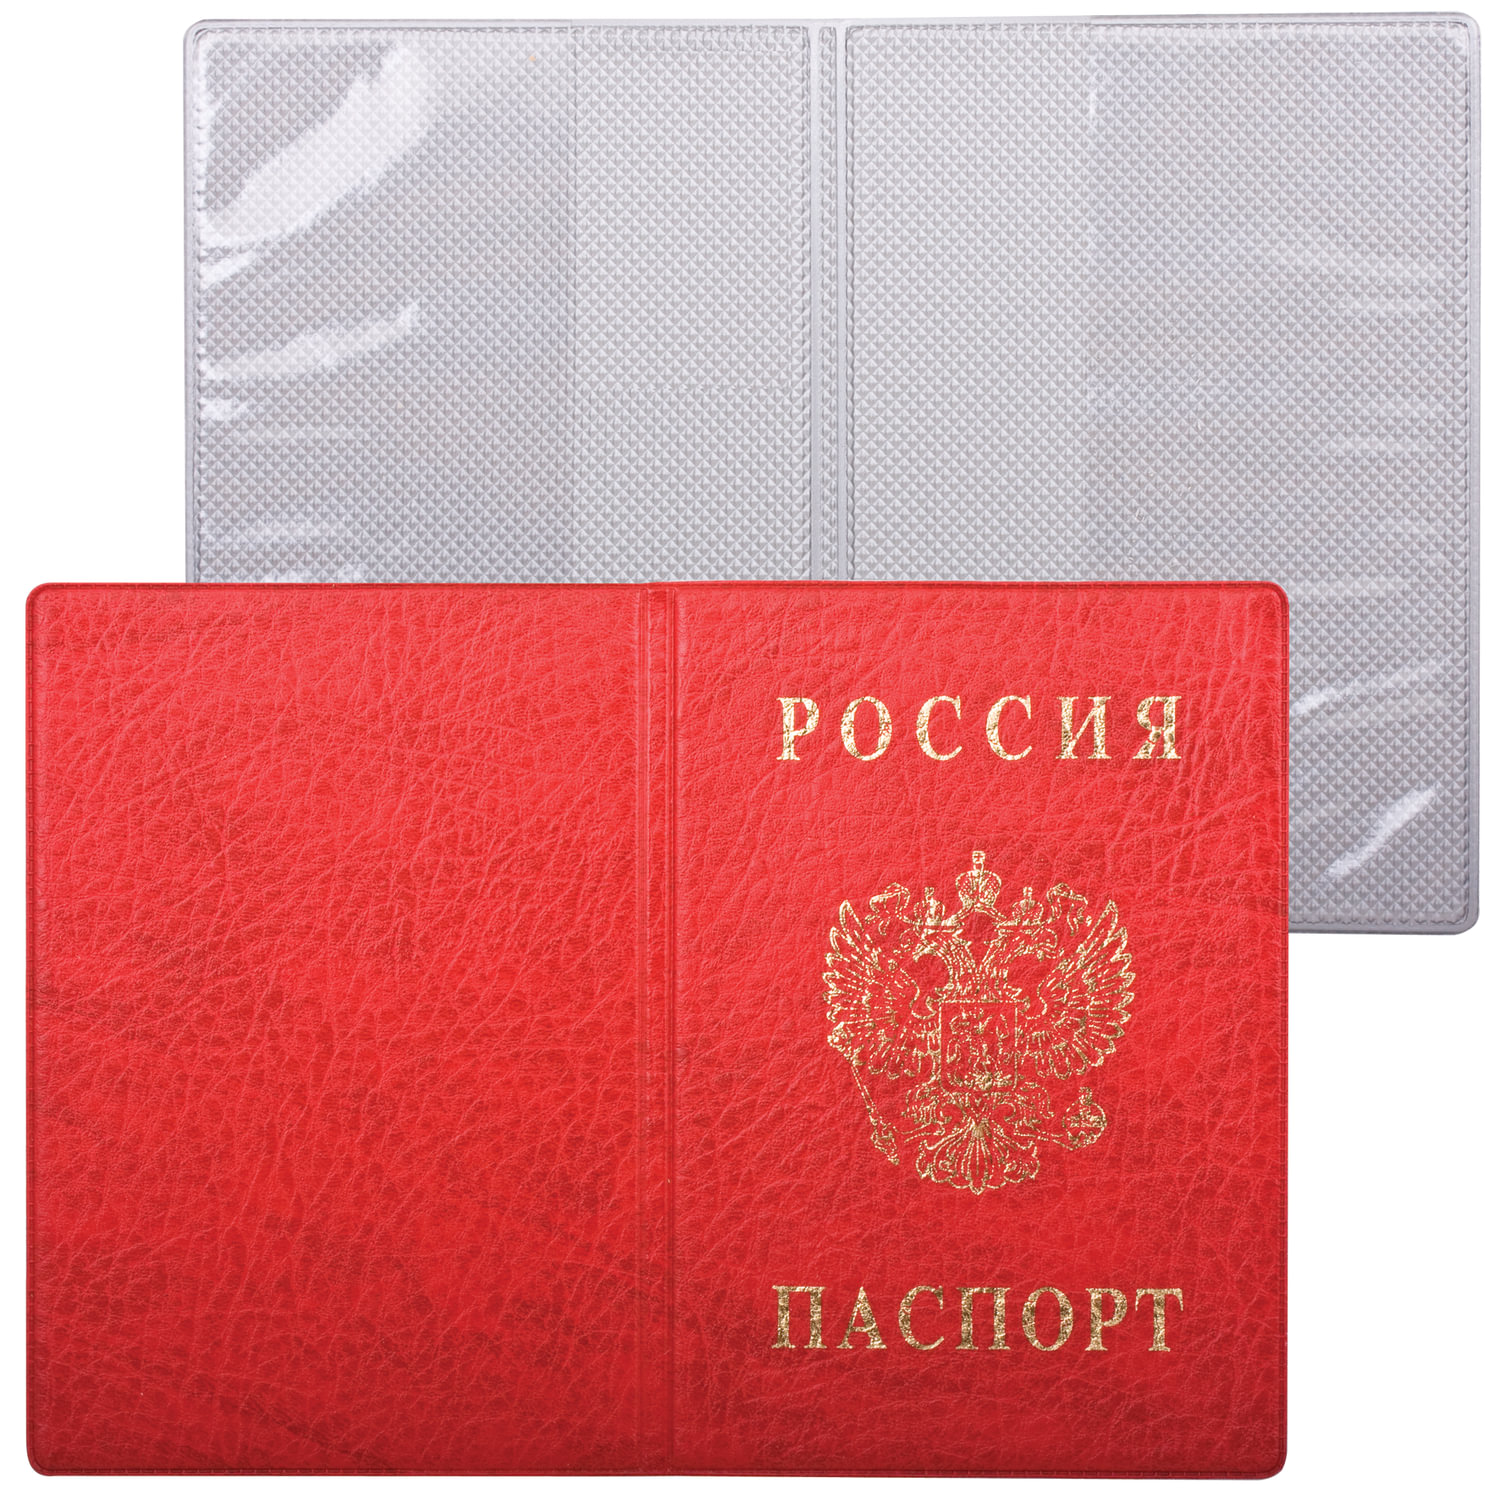 Обложка для паспорта с гербом, ПВХ, печать золотом, красная, ДПС, 2203.В-102, (18 шт.)